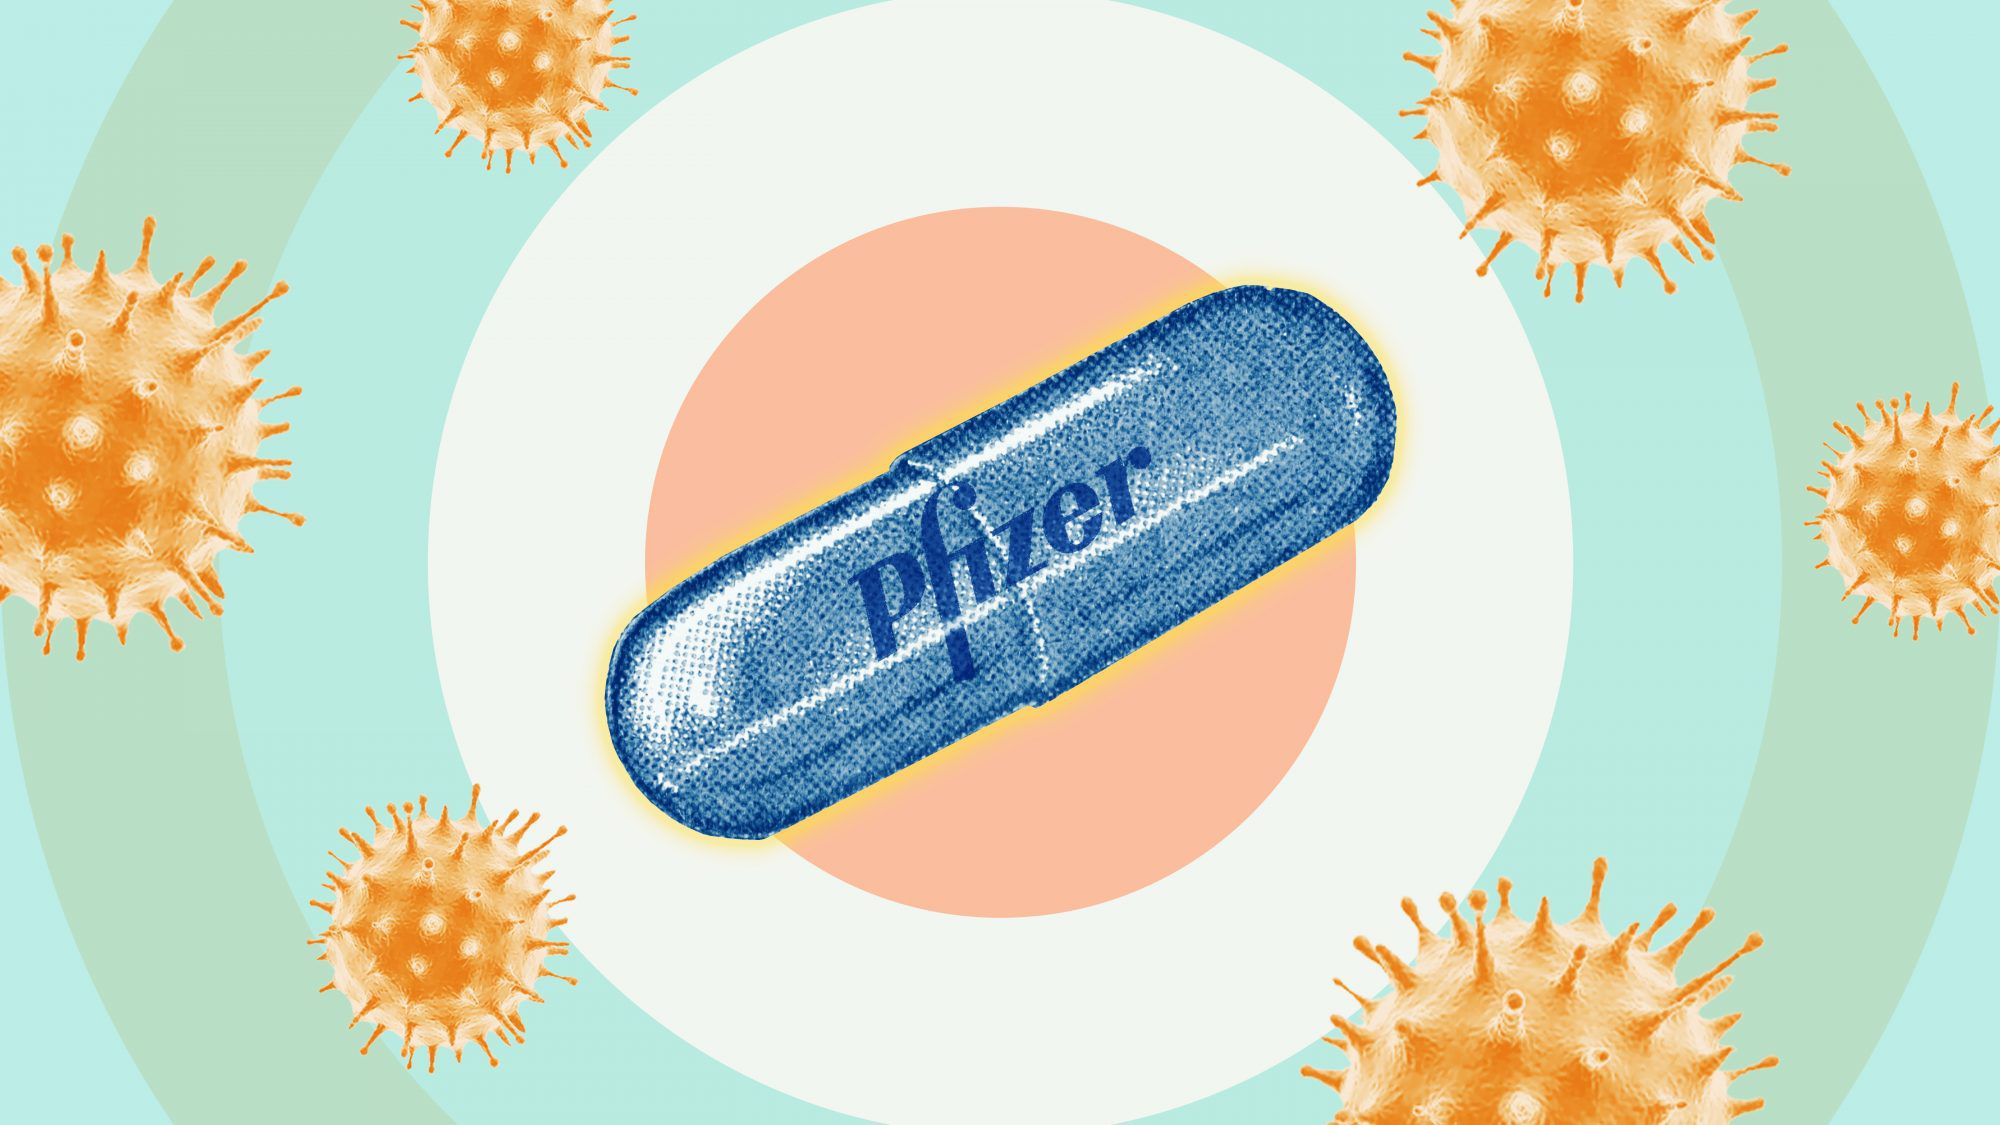 Νέα μελέτη: Το χάπι της Pfizer μειώνει τον κίνδυνο νοσηλείας και θανάτου λόγω κορωνοϊού σε ηλικιωμένους